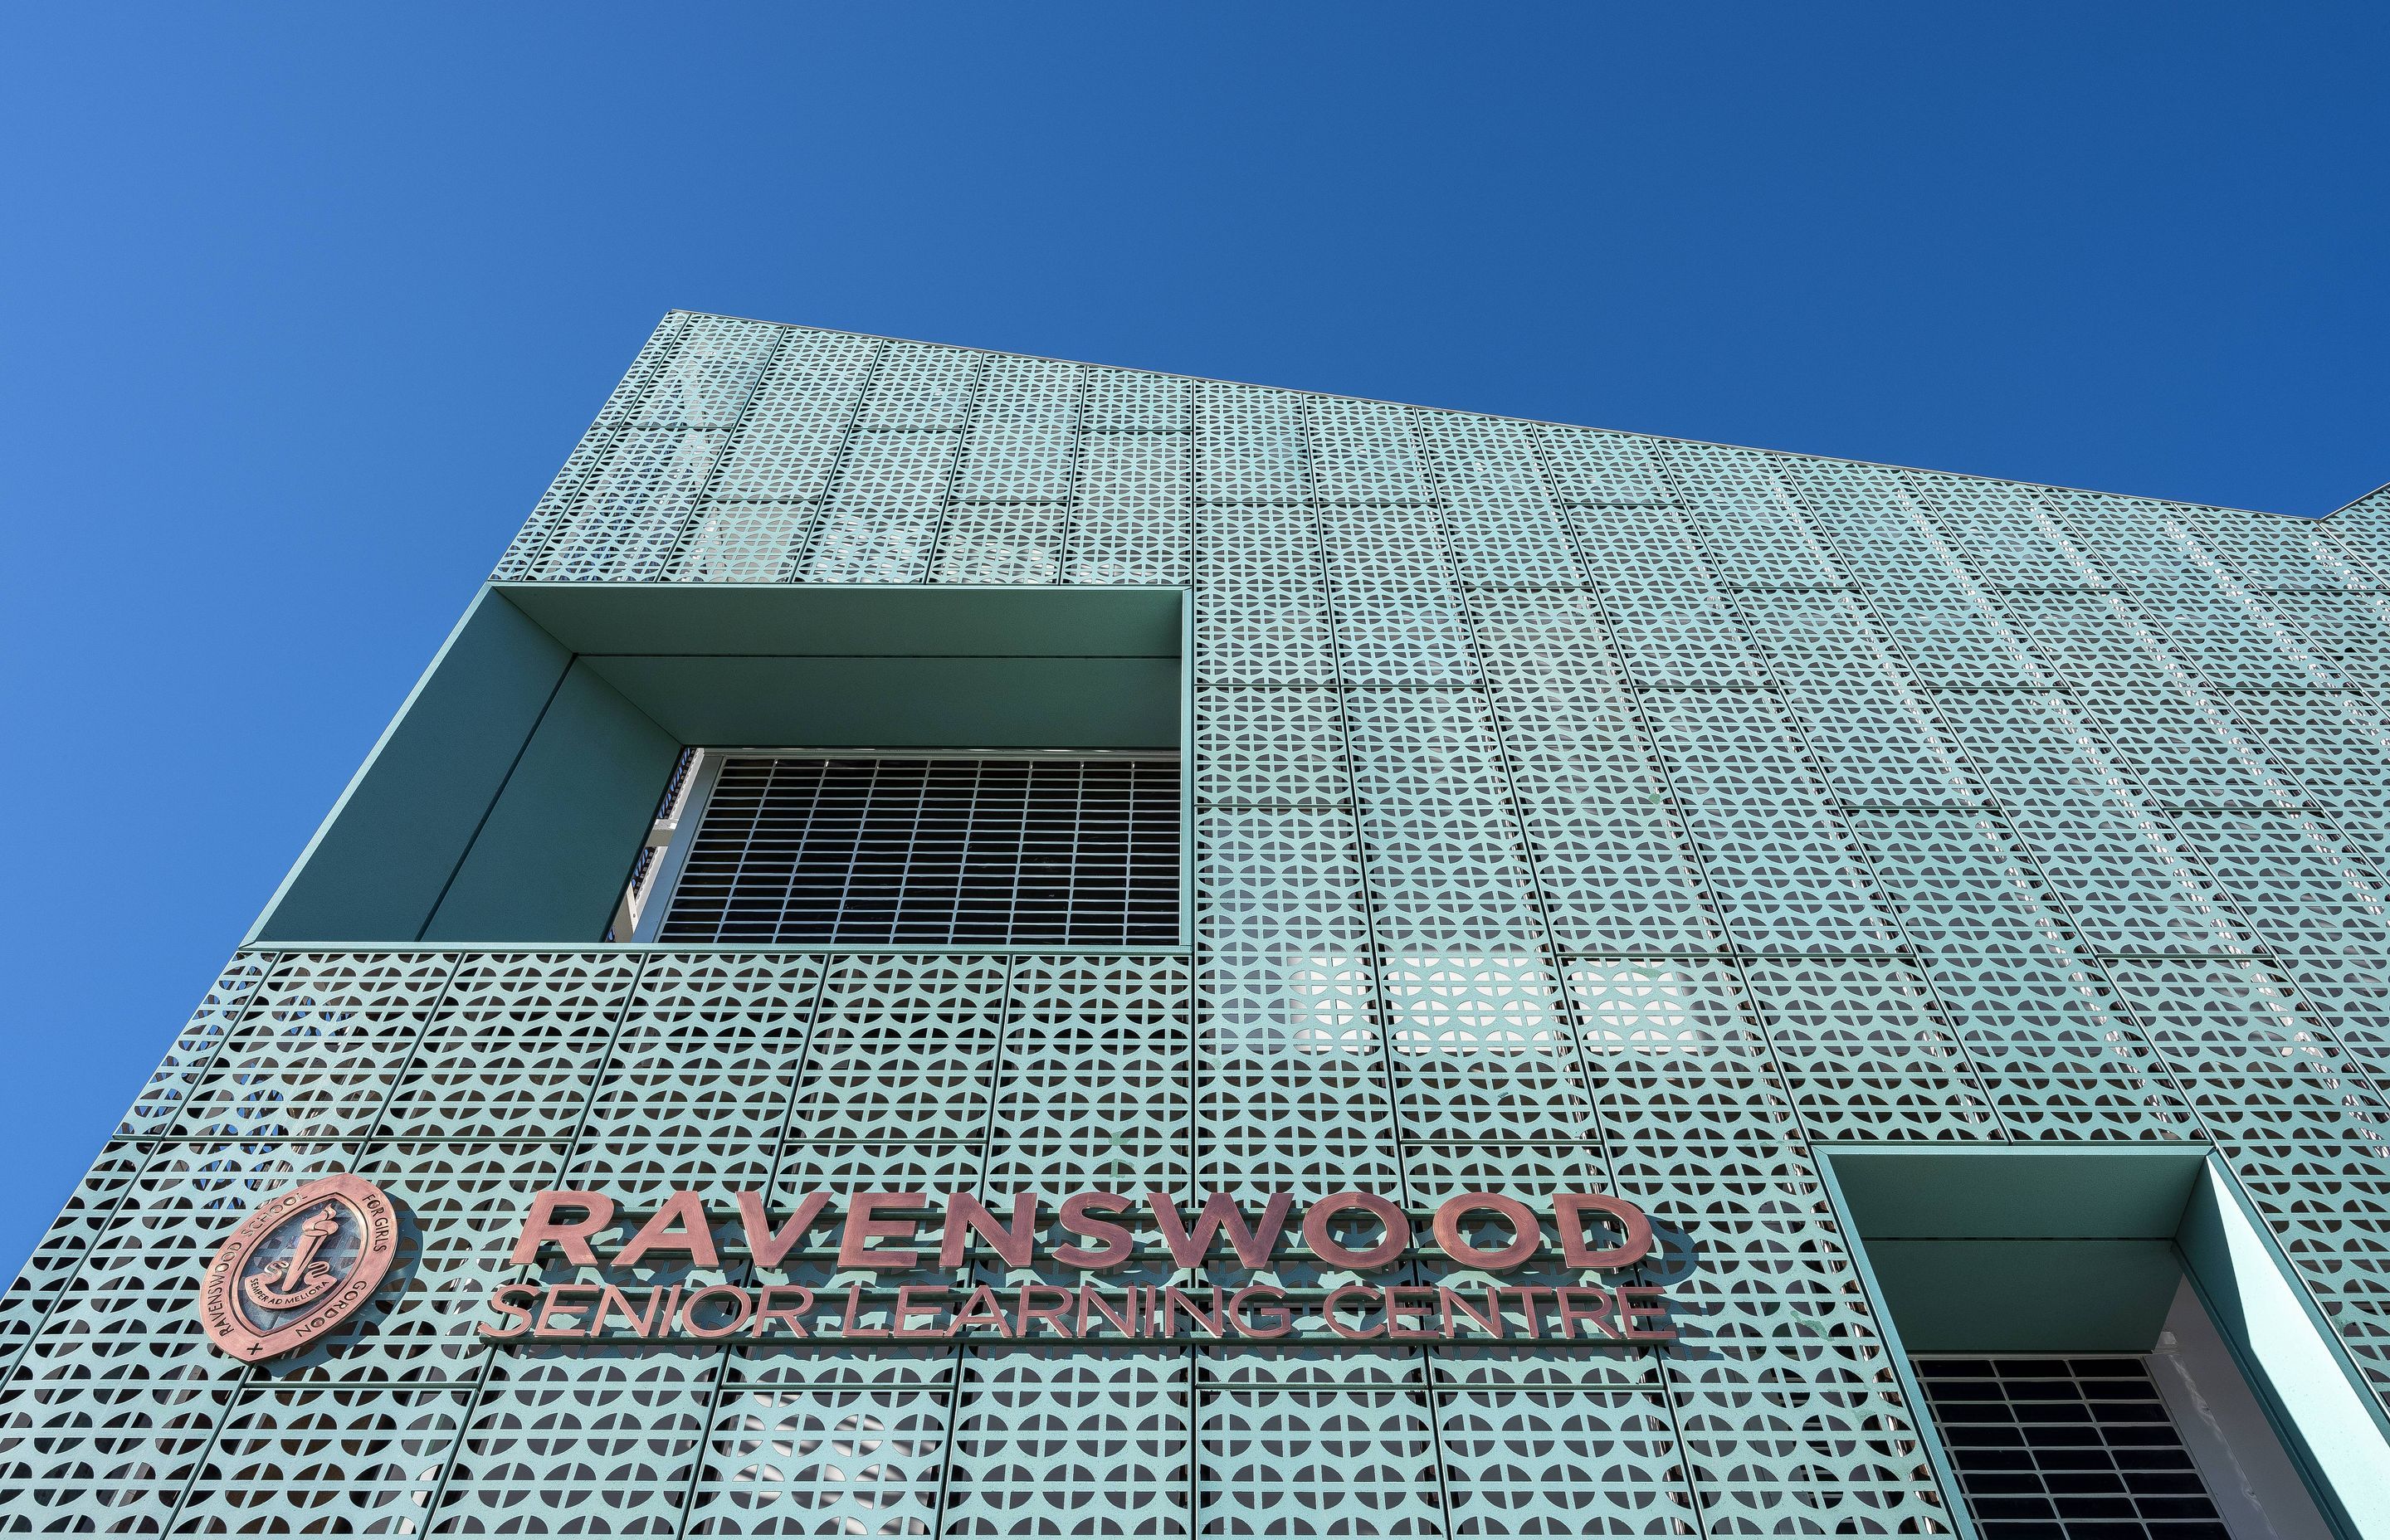 Ravenswood School for Girls